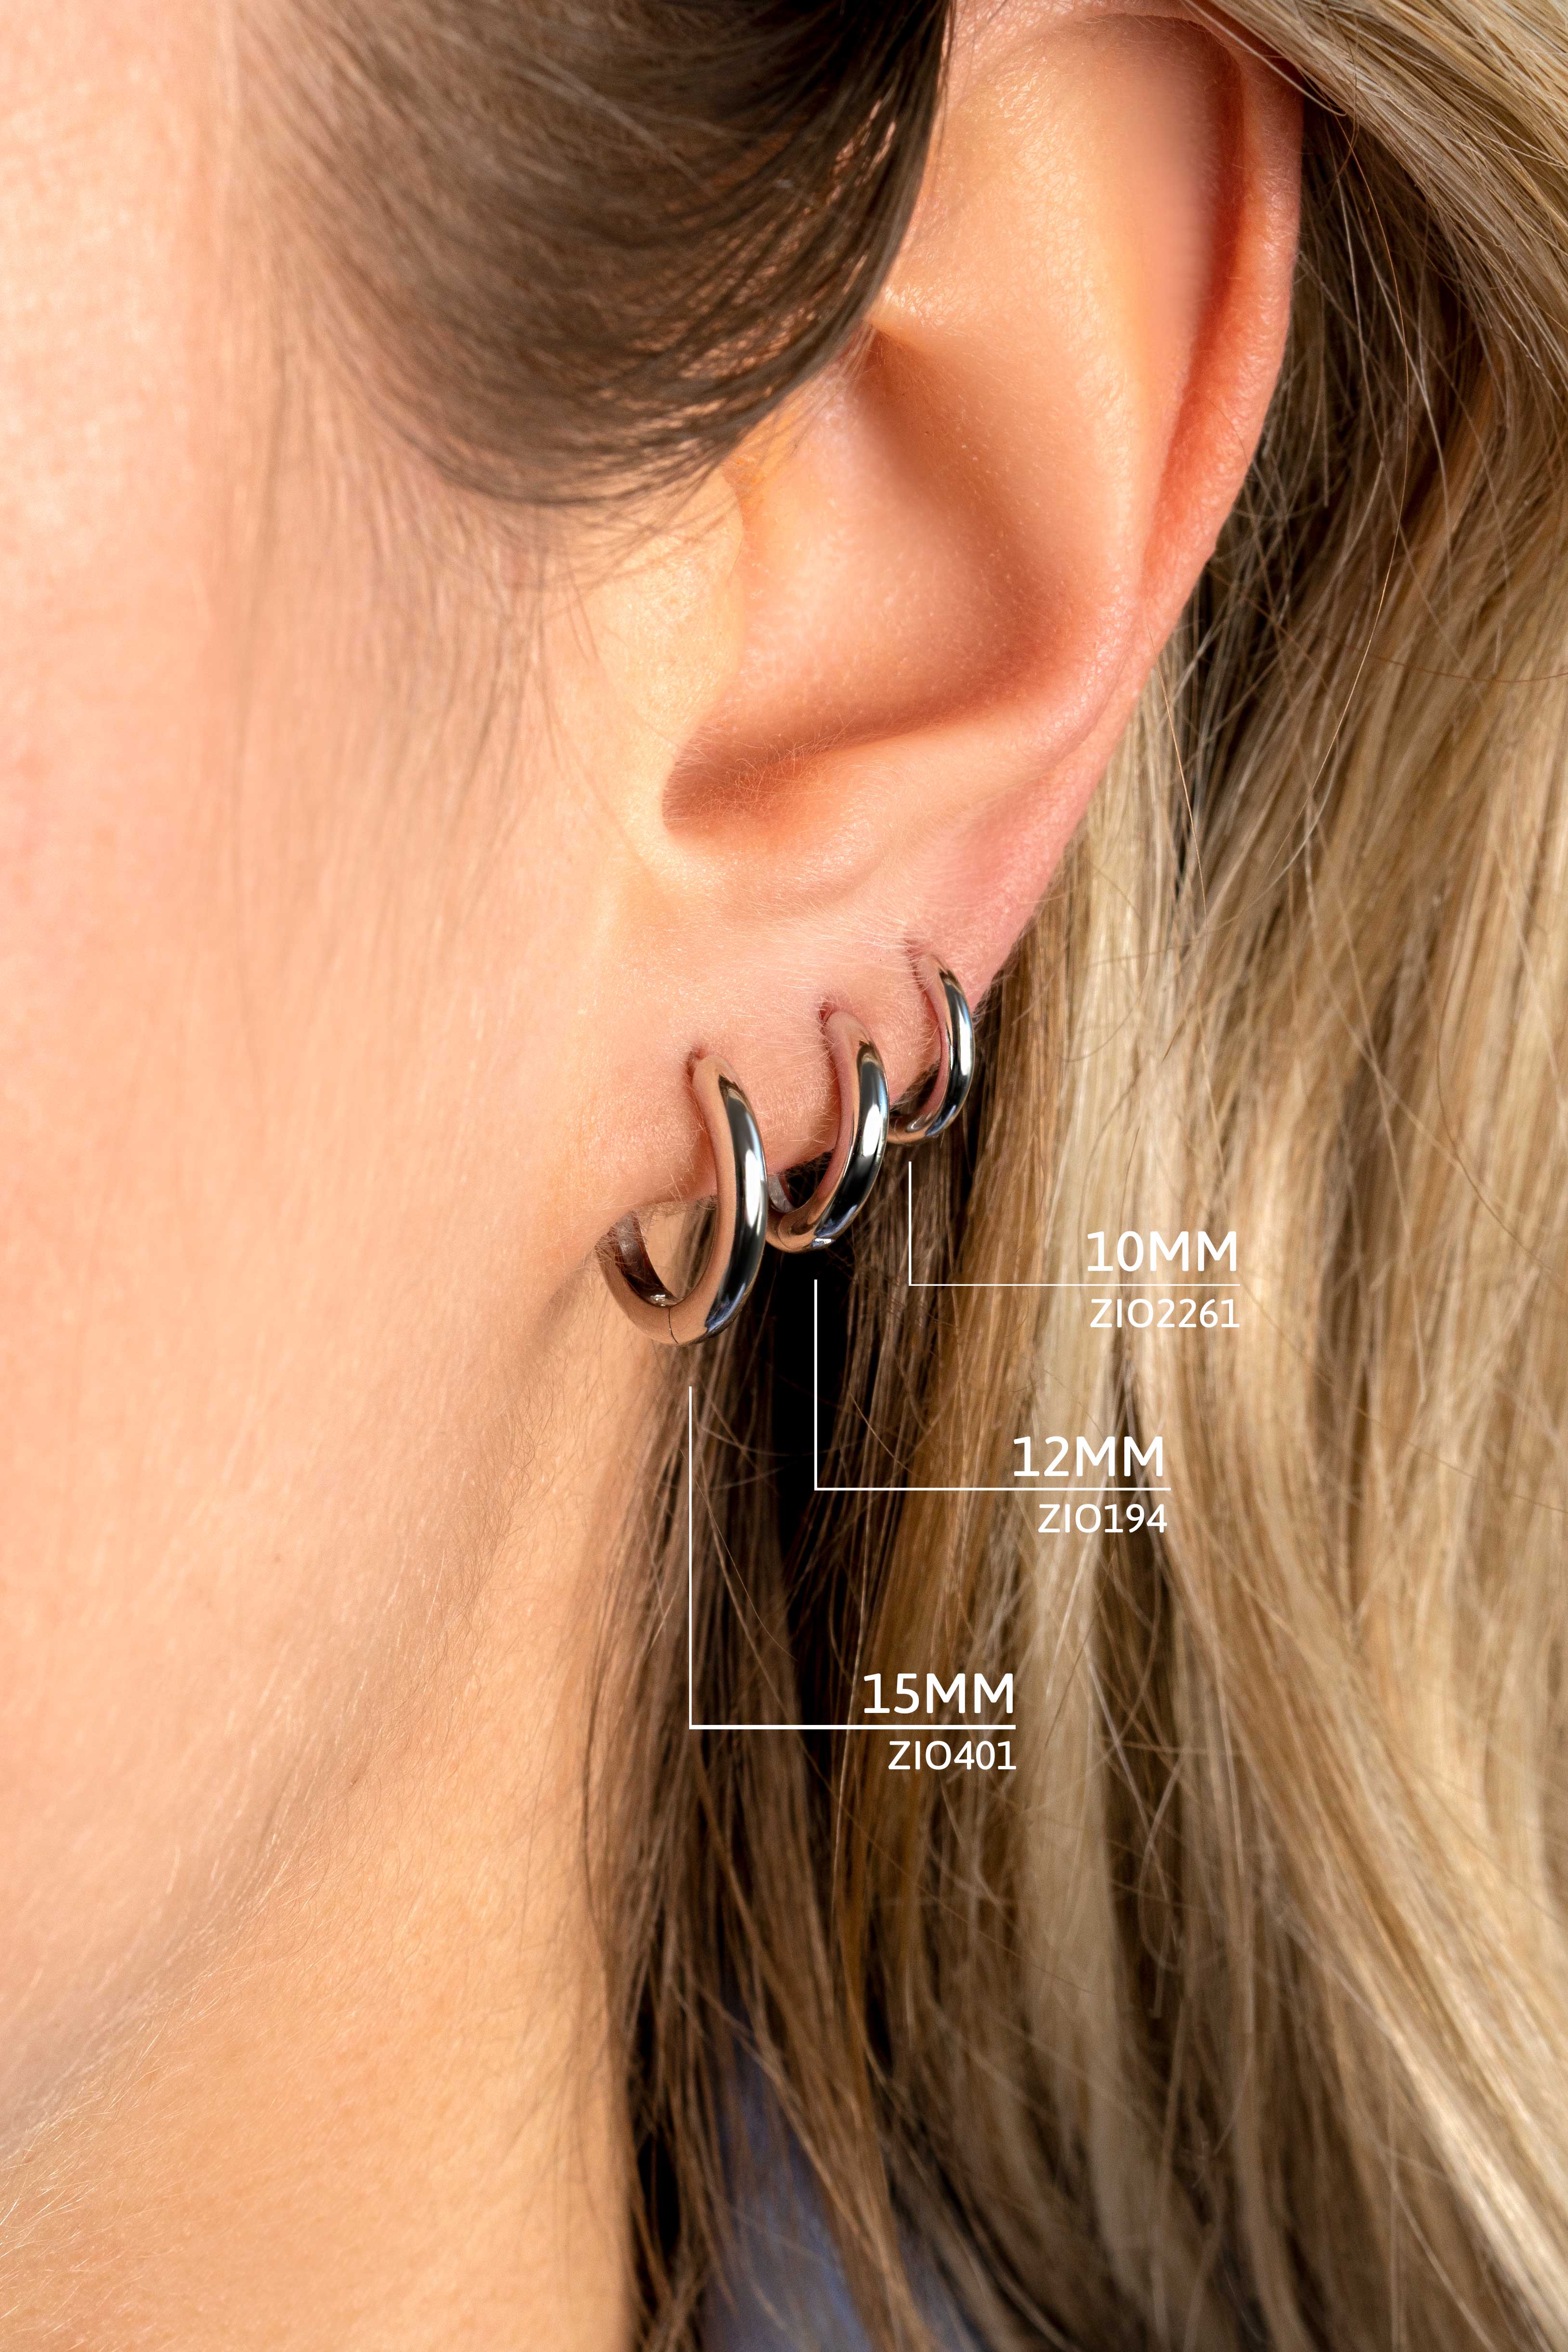 10mm ZINZI Sterling Silver Hoop Earrings width 2mm ZIO2261